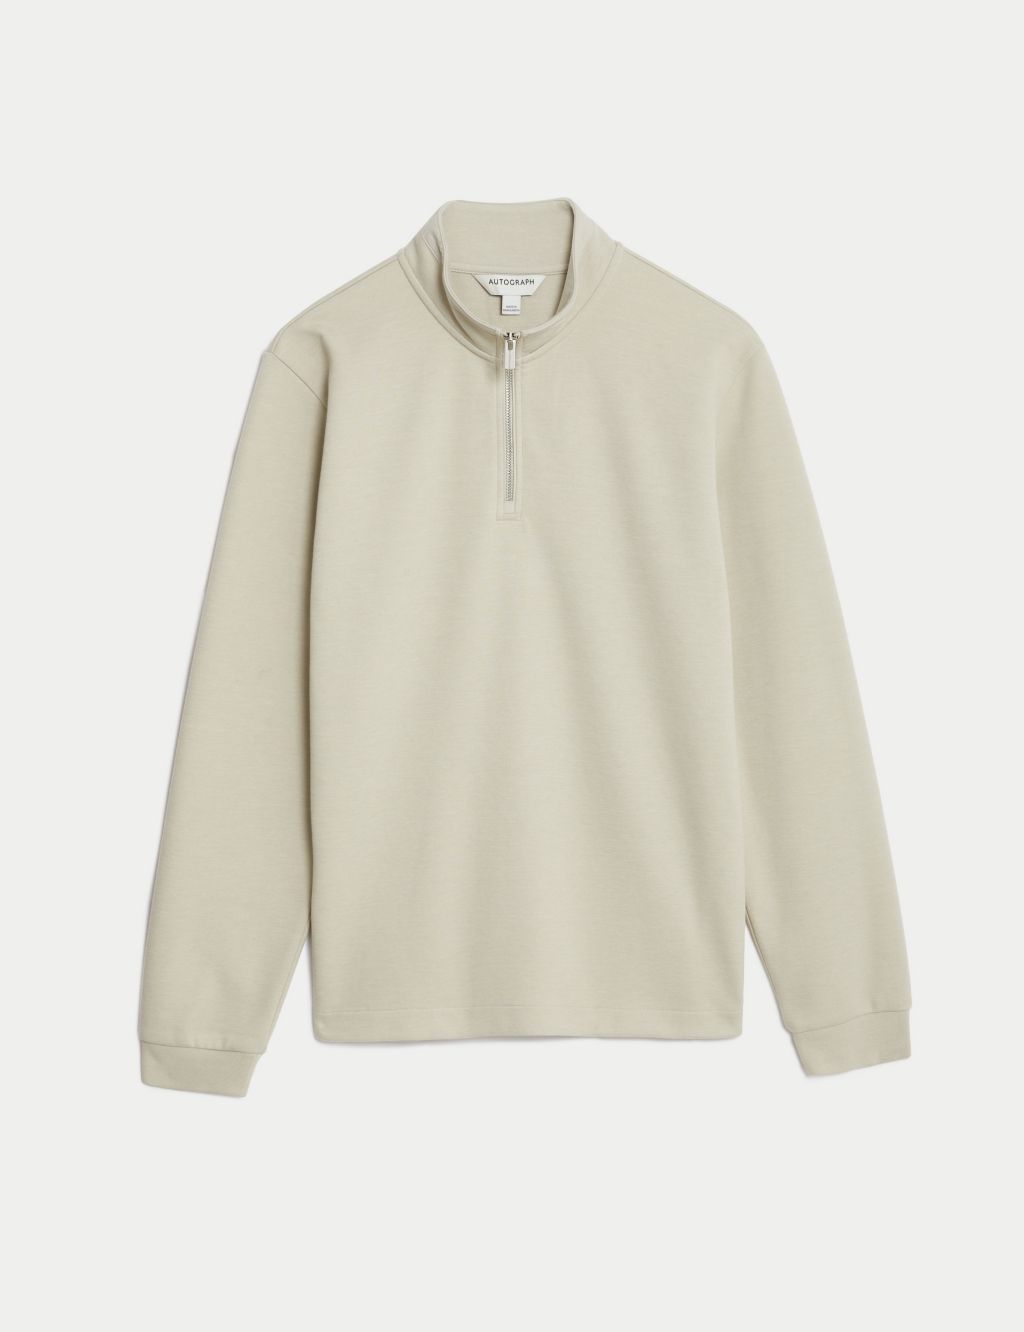 Cotton Blend Half Zip Sweatshirt image 2